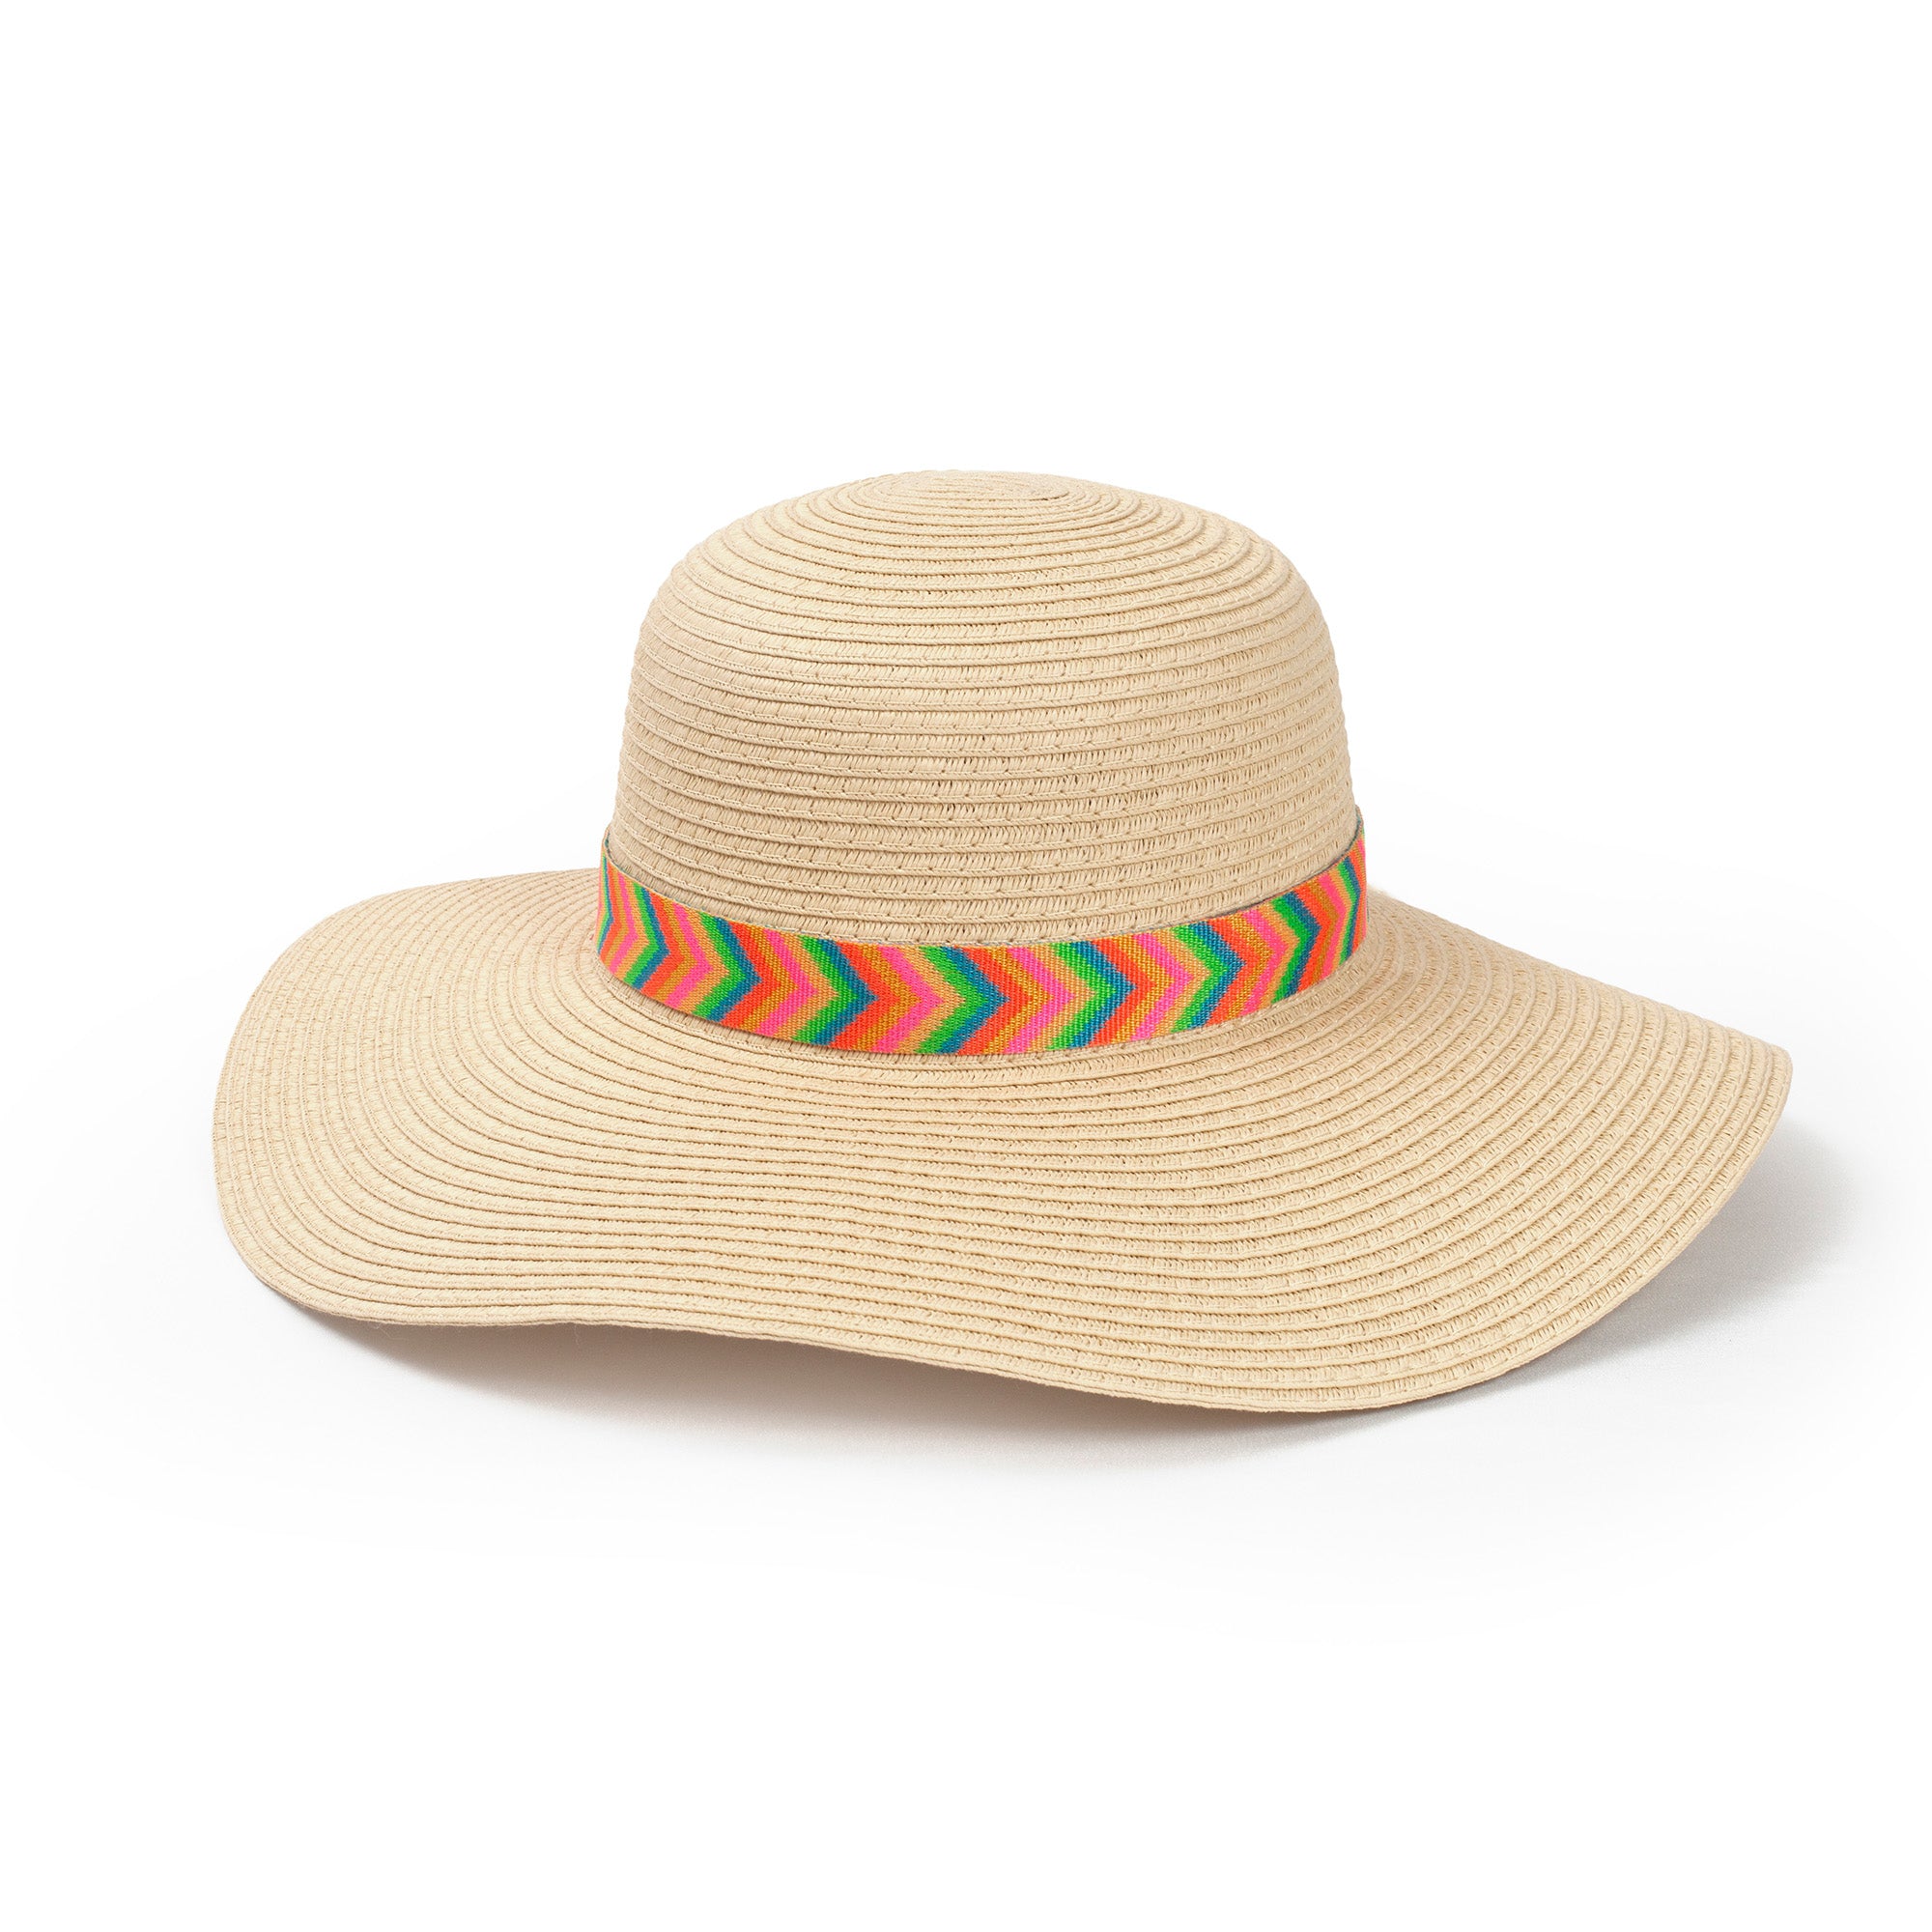 Women’s Hats, Women’s Sun Hats, Comfortable, Neon Beach, Summer, Beach Days